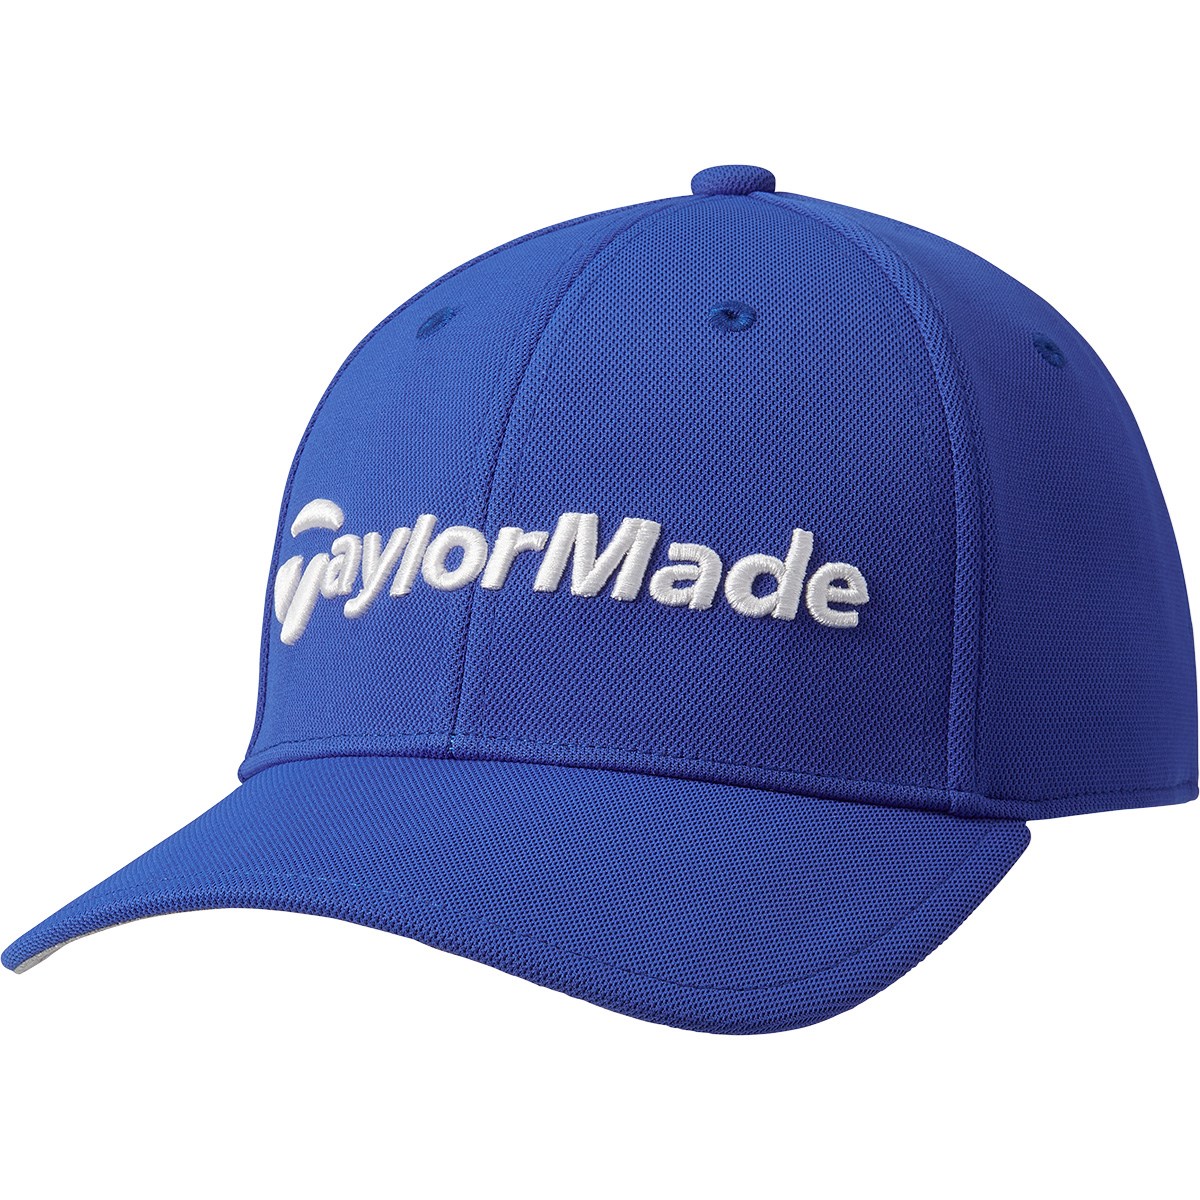 dショッピング |テーラーメイド Taylor Made サマーファンクショナル キャップ フリー ライトグレー | カテゴリ：帽子・バイザー